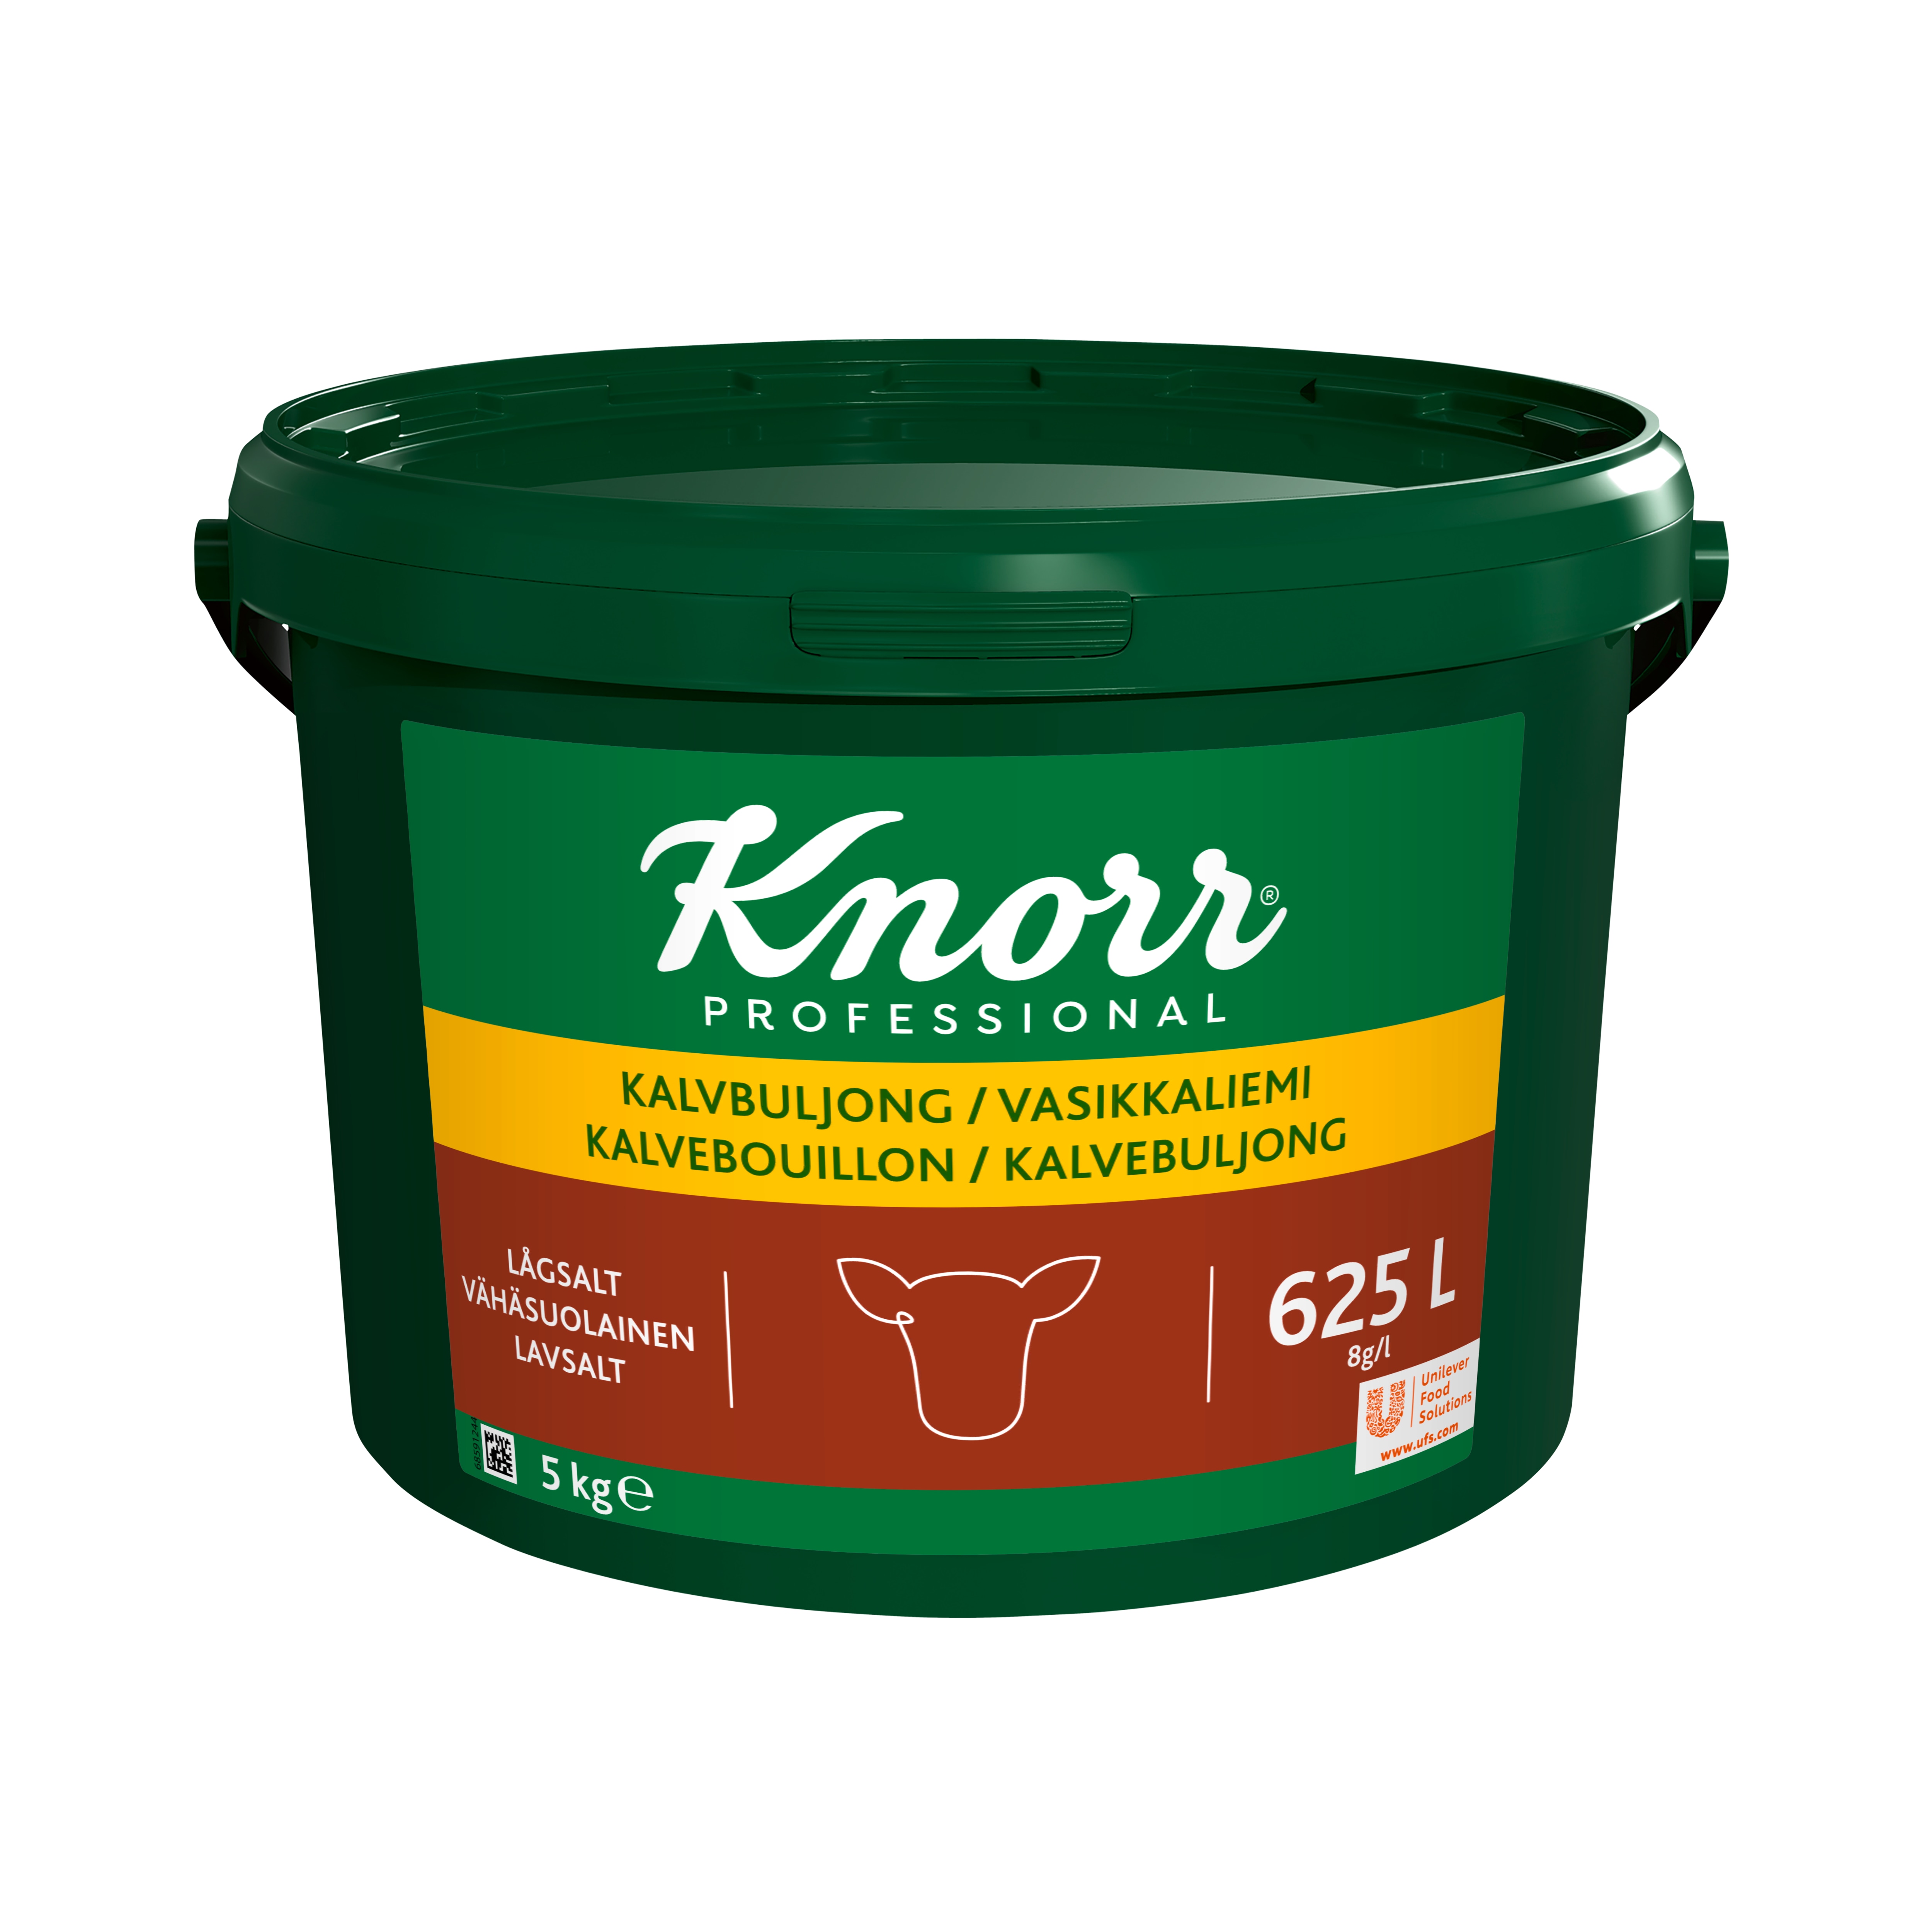 Knorr Kalvbuljong lågsalt 1x5kg - 